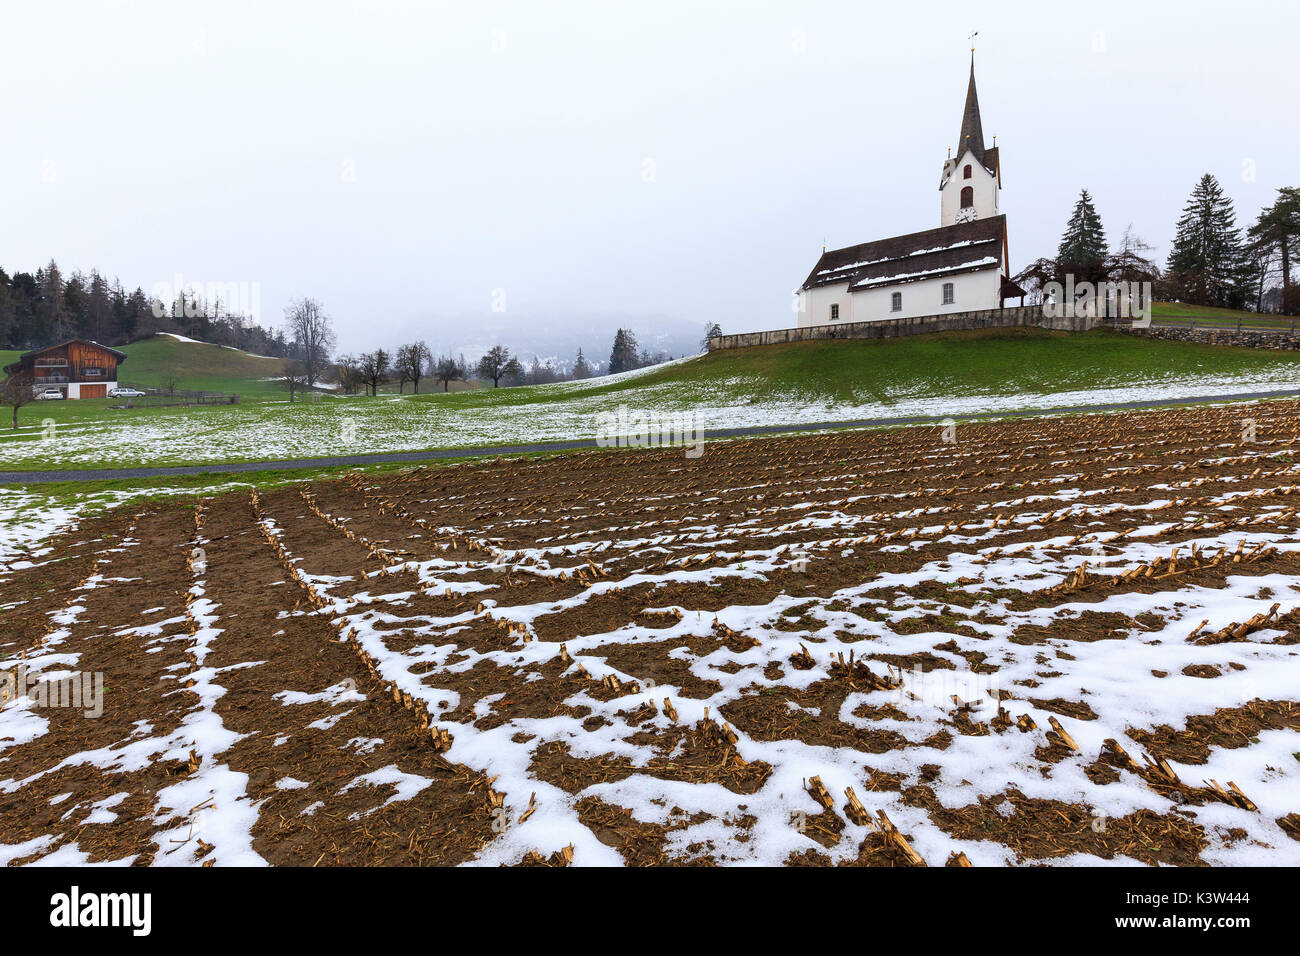 Labouré les champs en face de l'église. Versam, Safiental, Surselva, Grisons, Suisse, Europe Banque D'Images